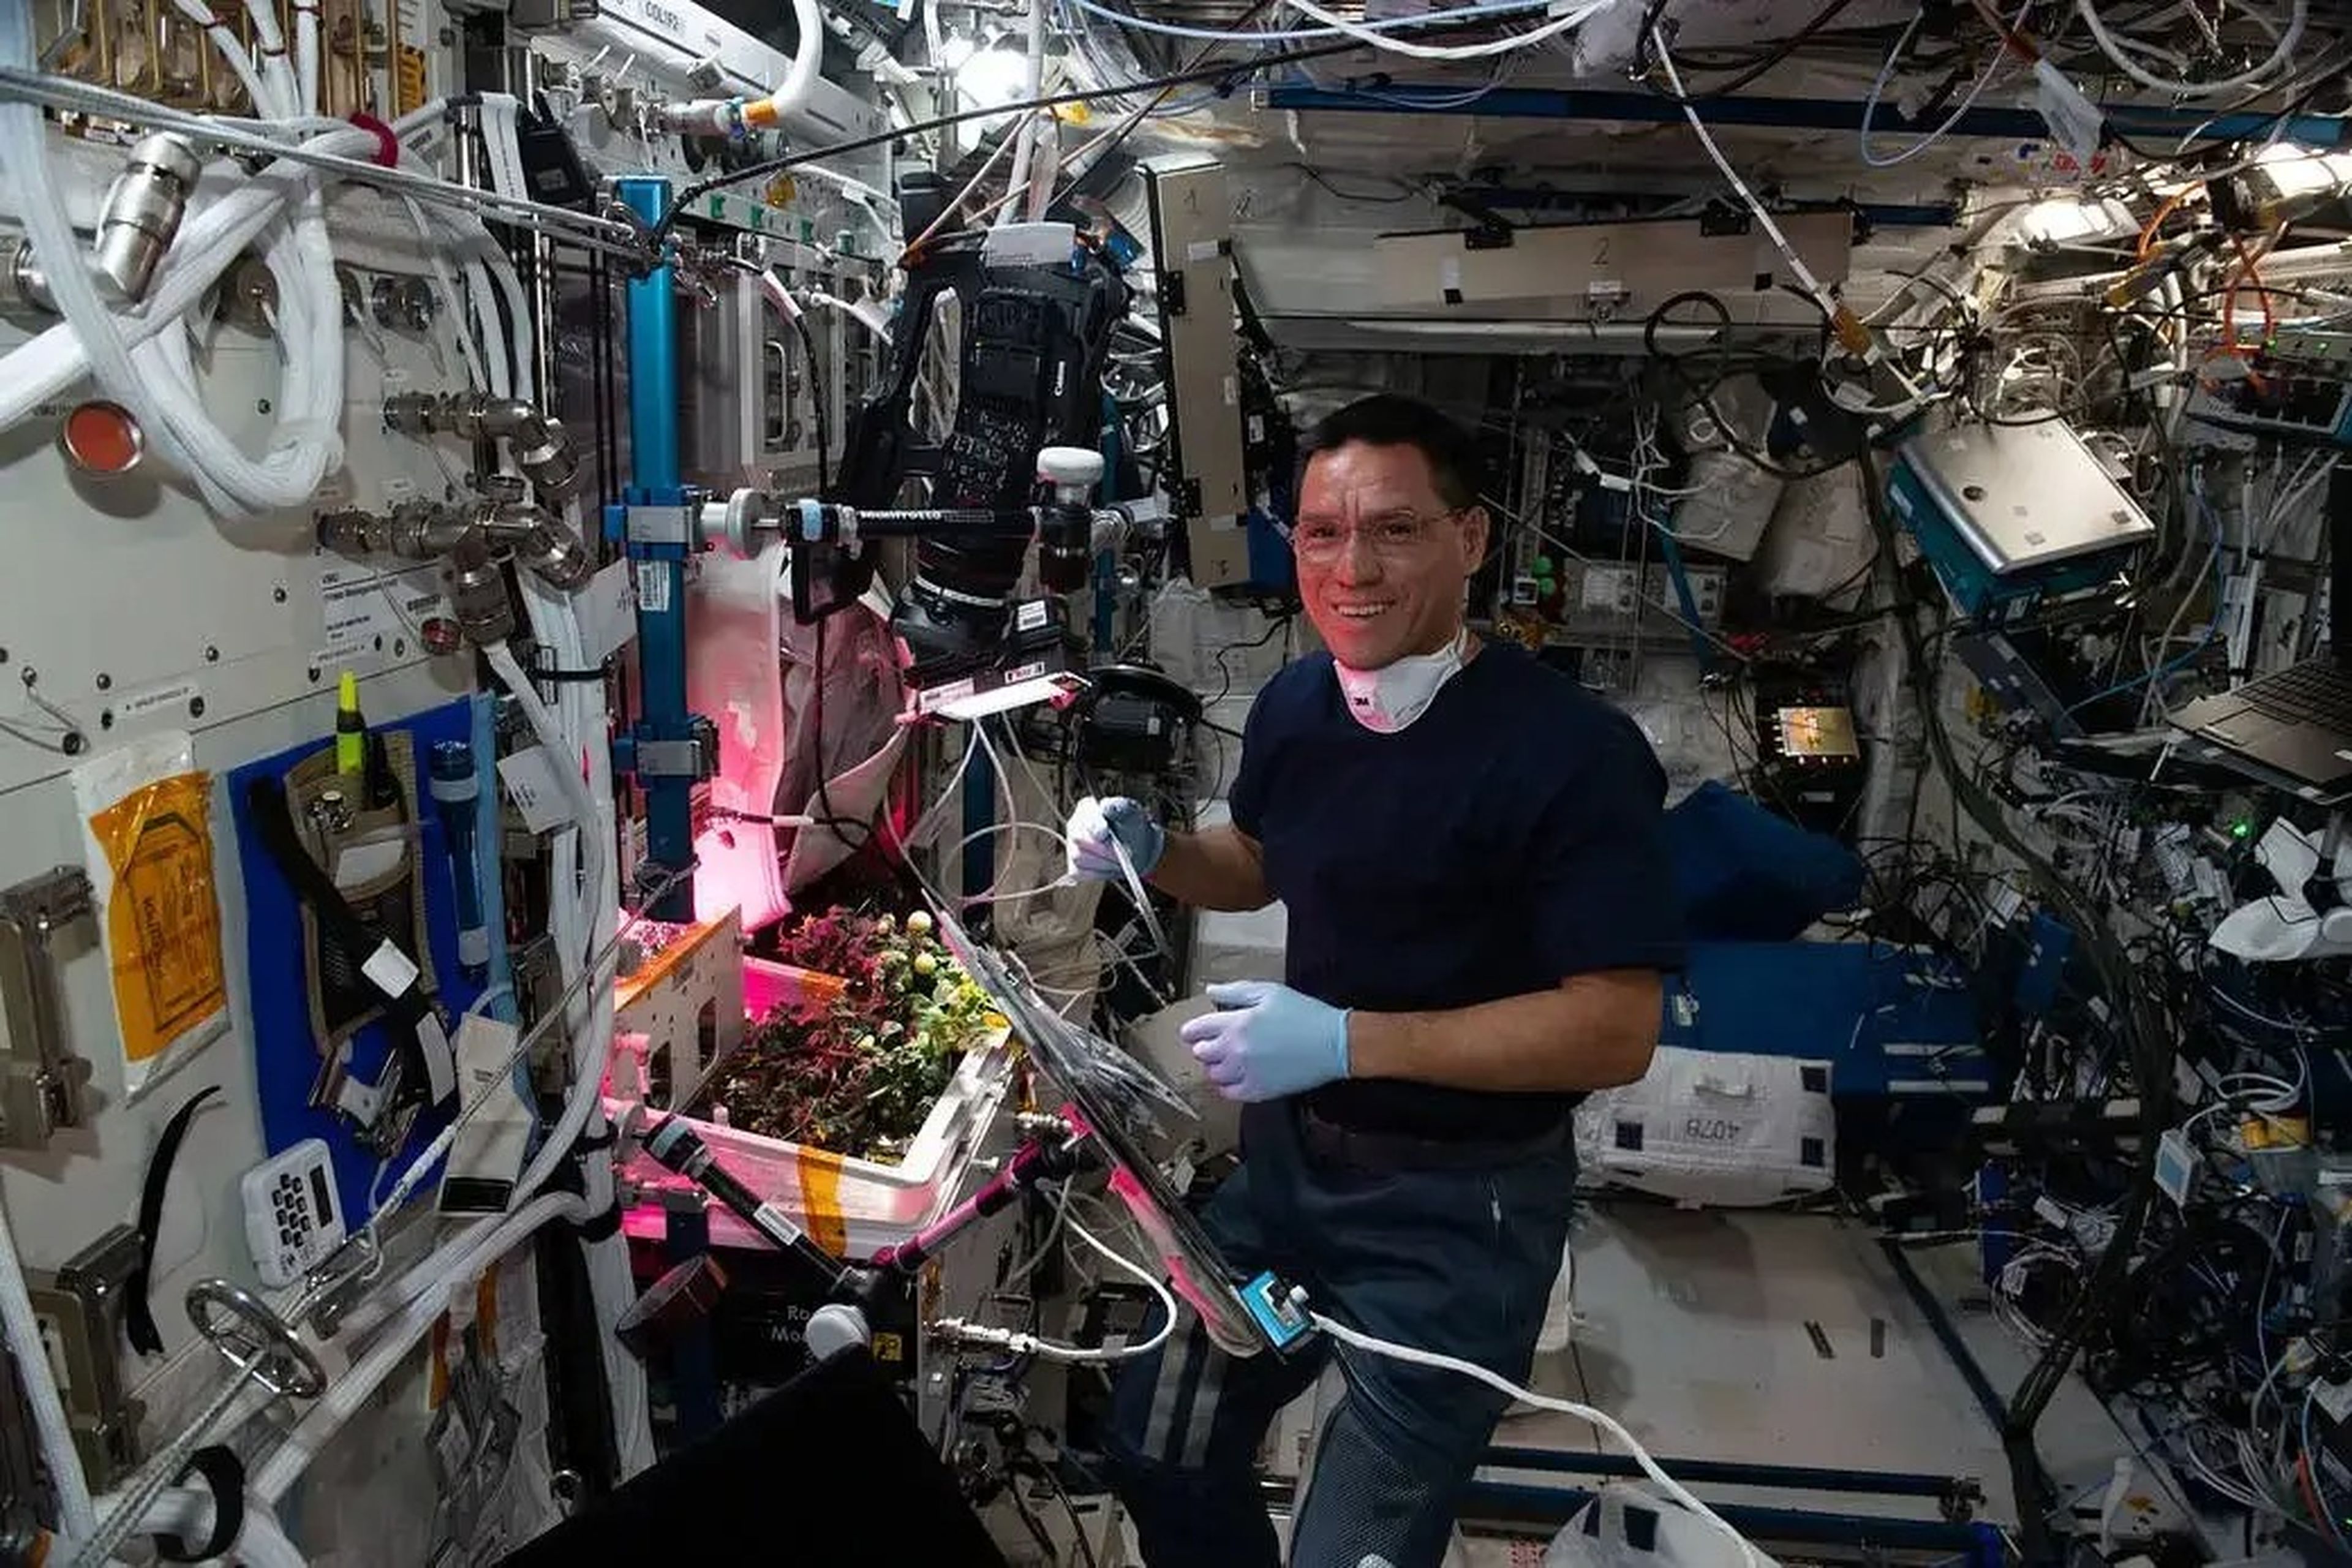 رائد الفضاء ناسا فرانك روبيو يزرع الطماطم في محطة الفضاء الدولية.